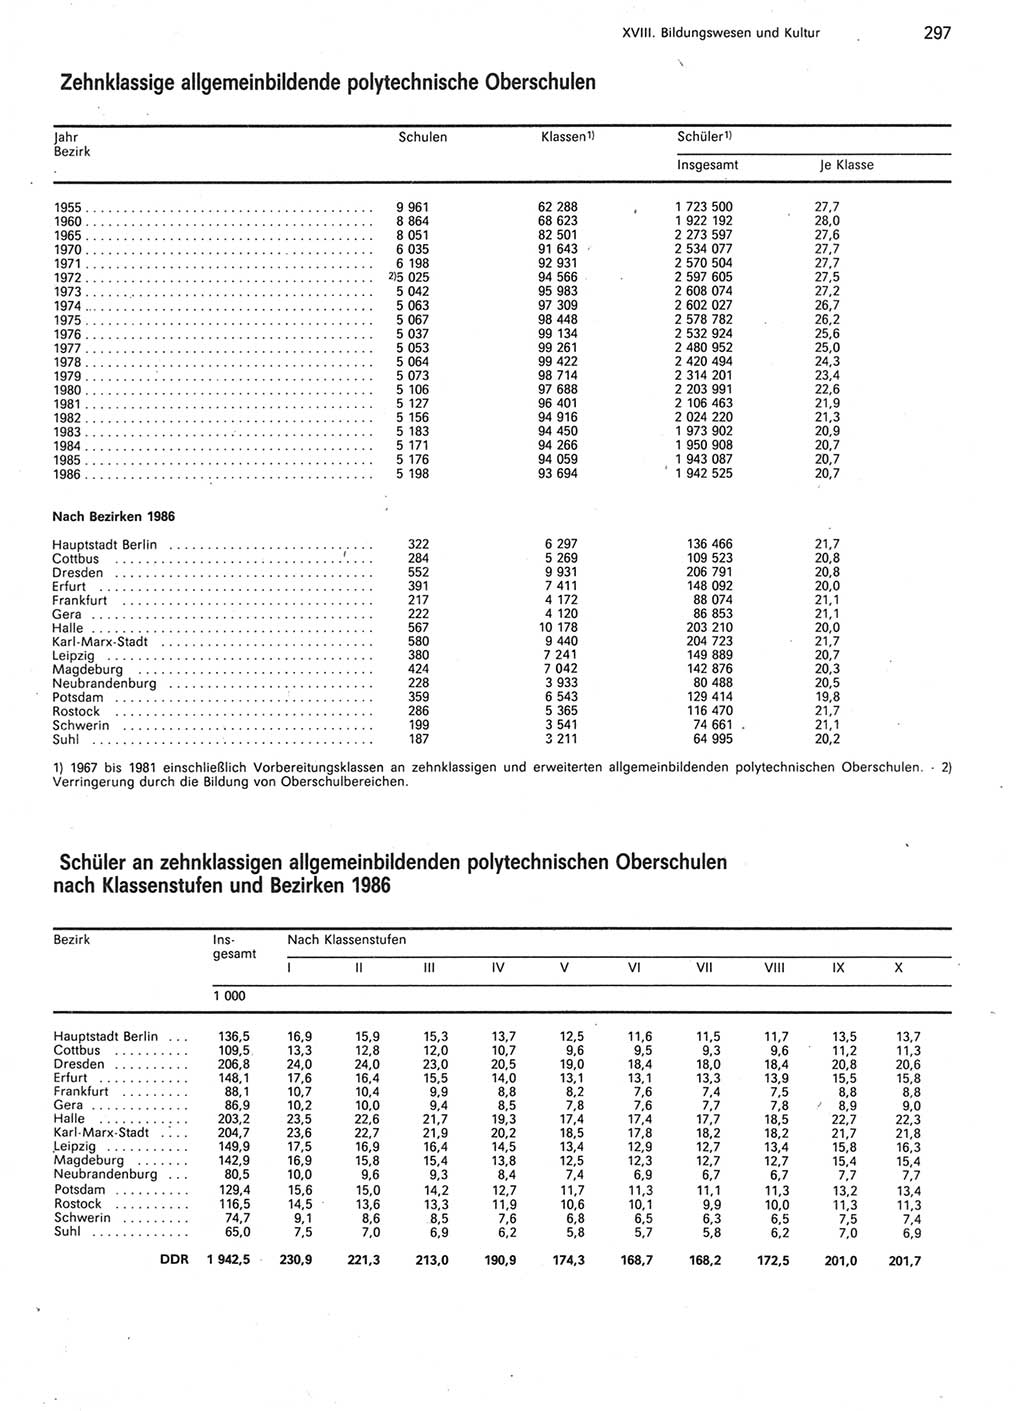 Statistisches Jahrbuch der Deutschen Demokratischen Republik (DDR) 1987, Seite 297 (Stat. Jb. DDR 1987, S. 297)